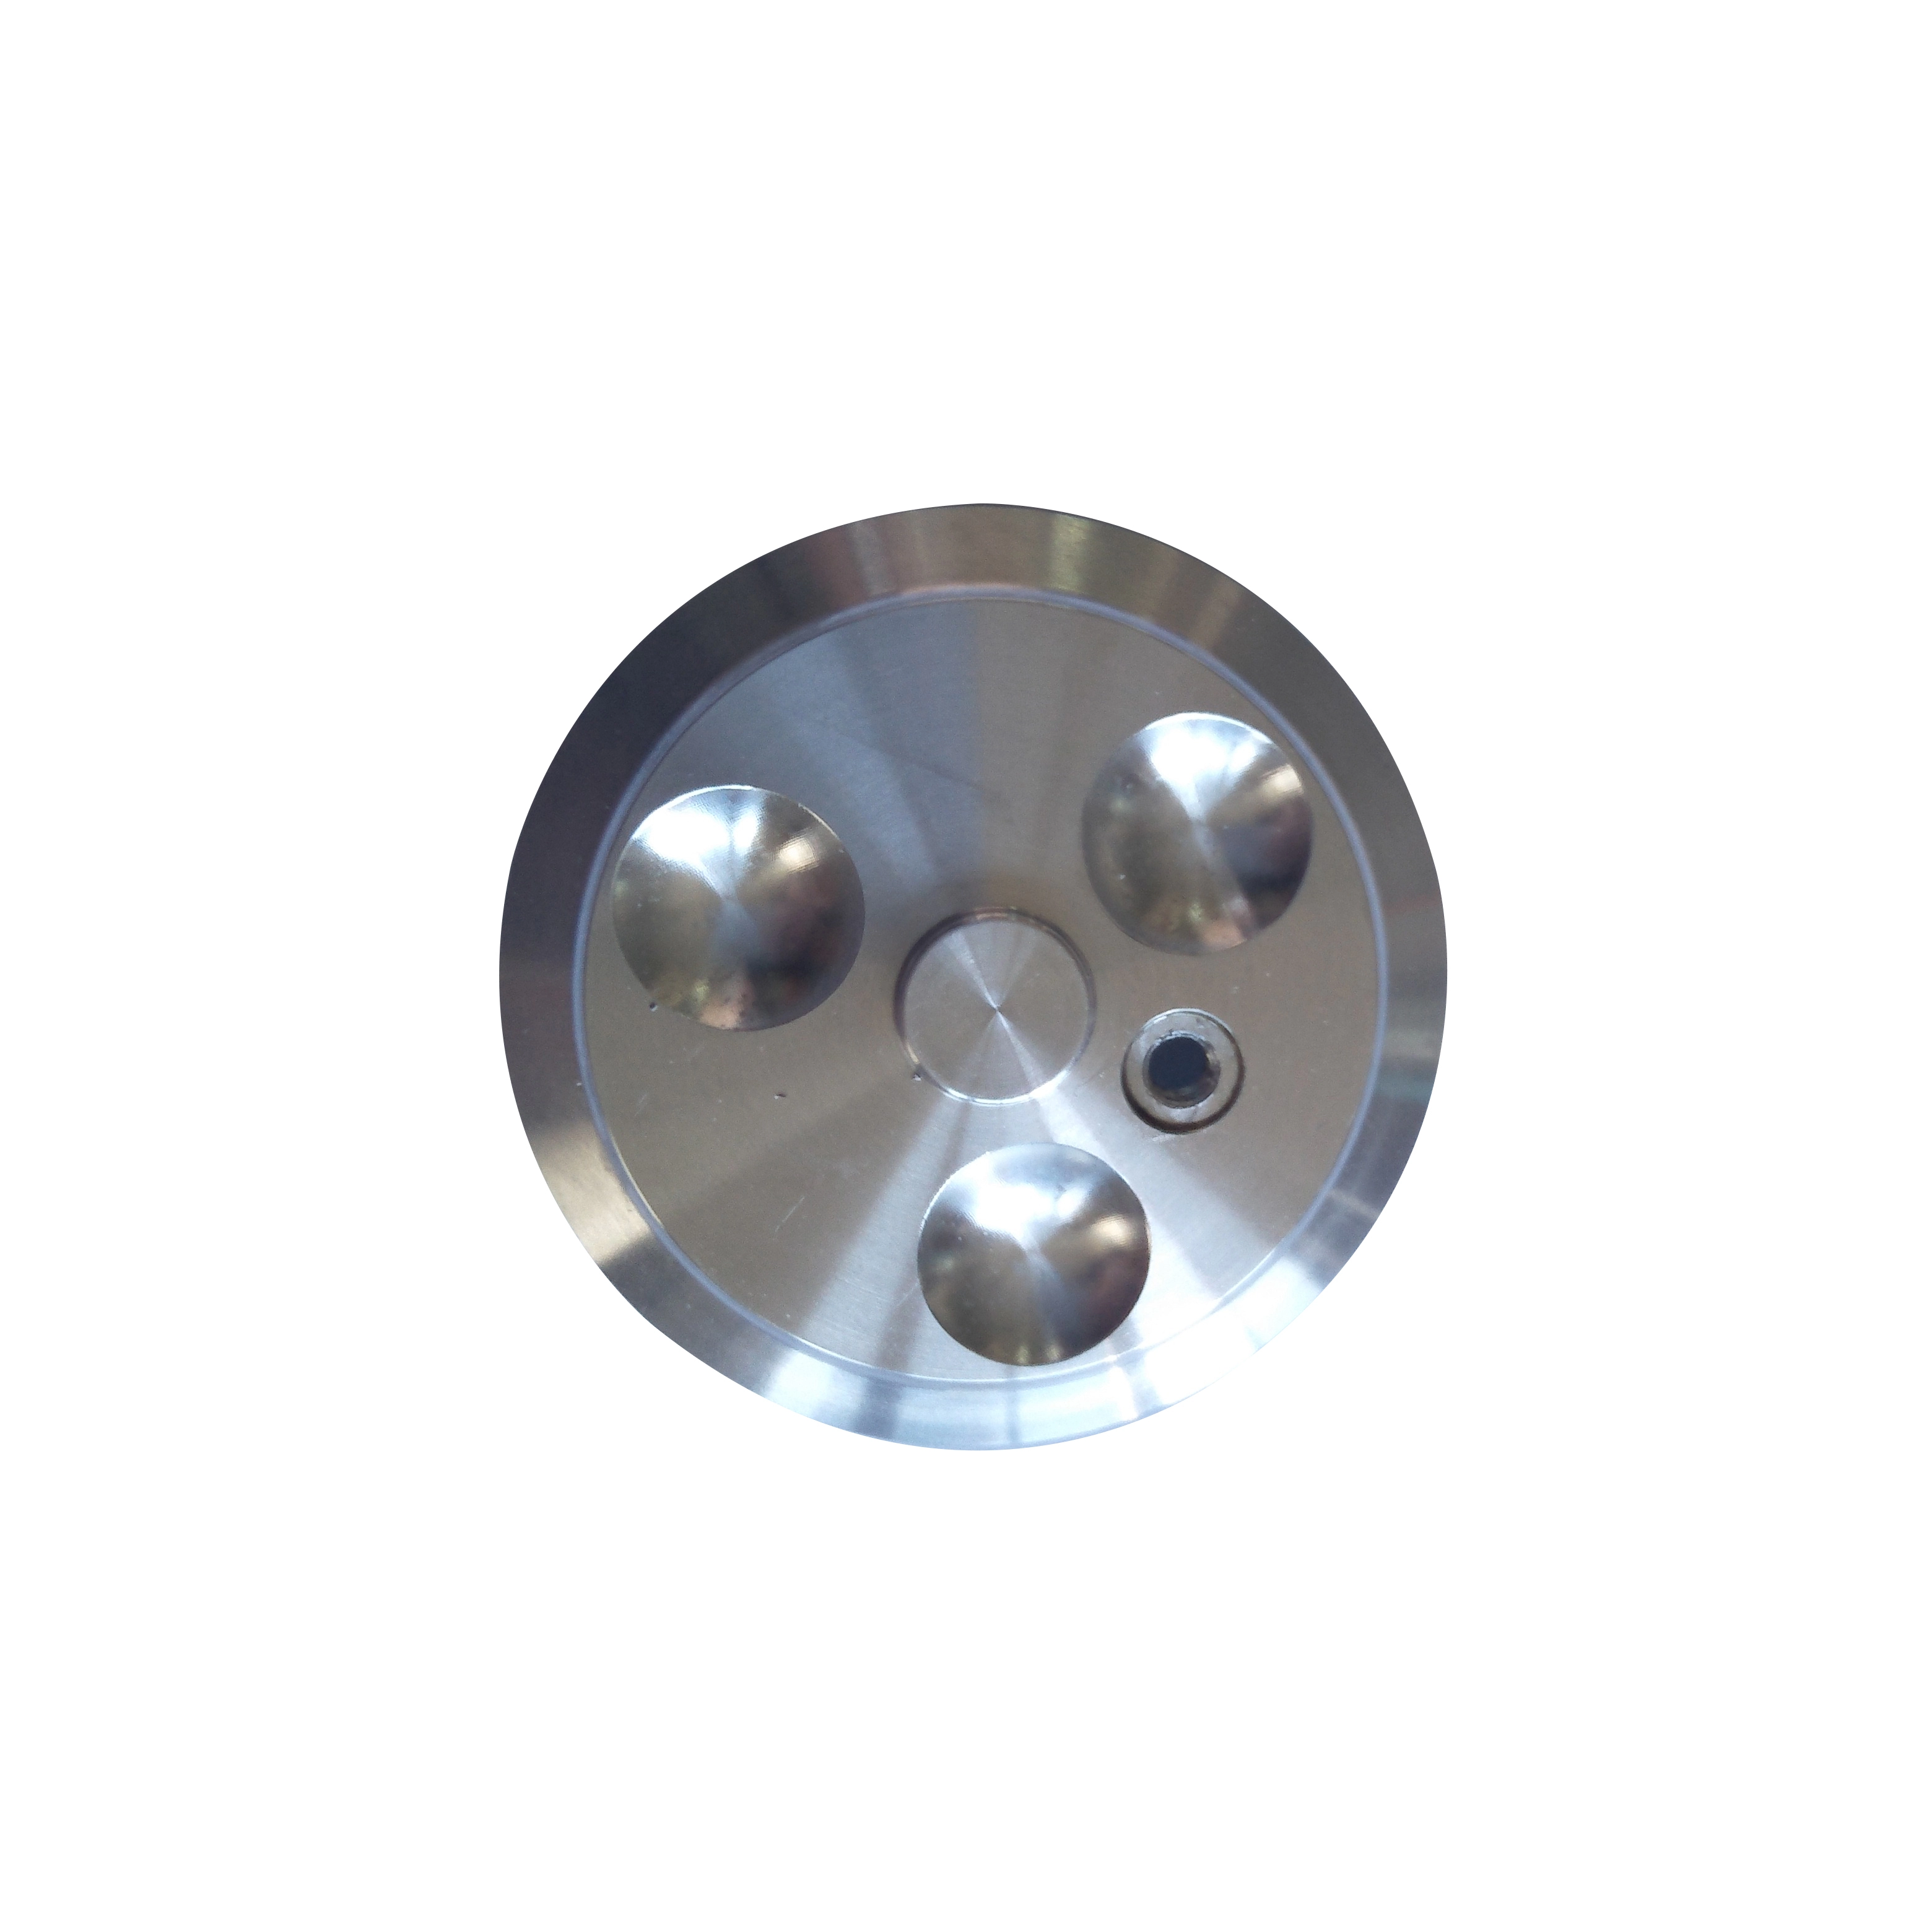 Parti in acciaio di grandi dimensioni lavorate con tornio-fresatrice automatica cnc a 6 assi ad alta precisione